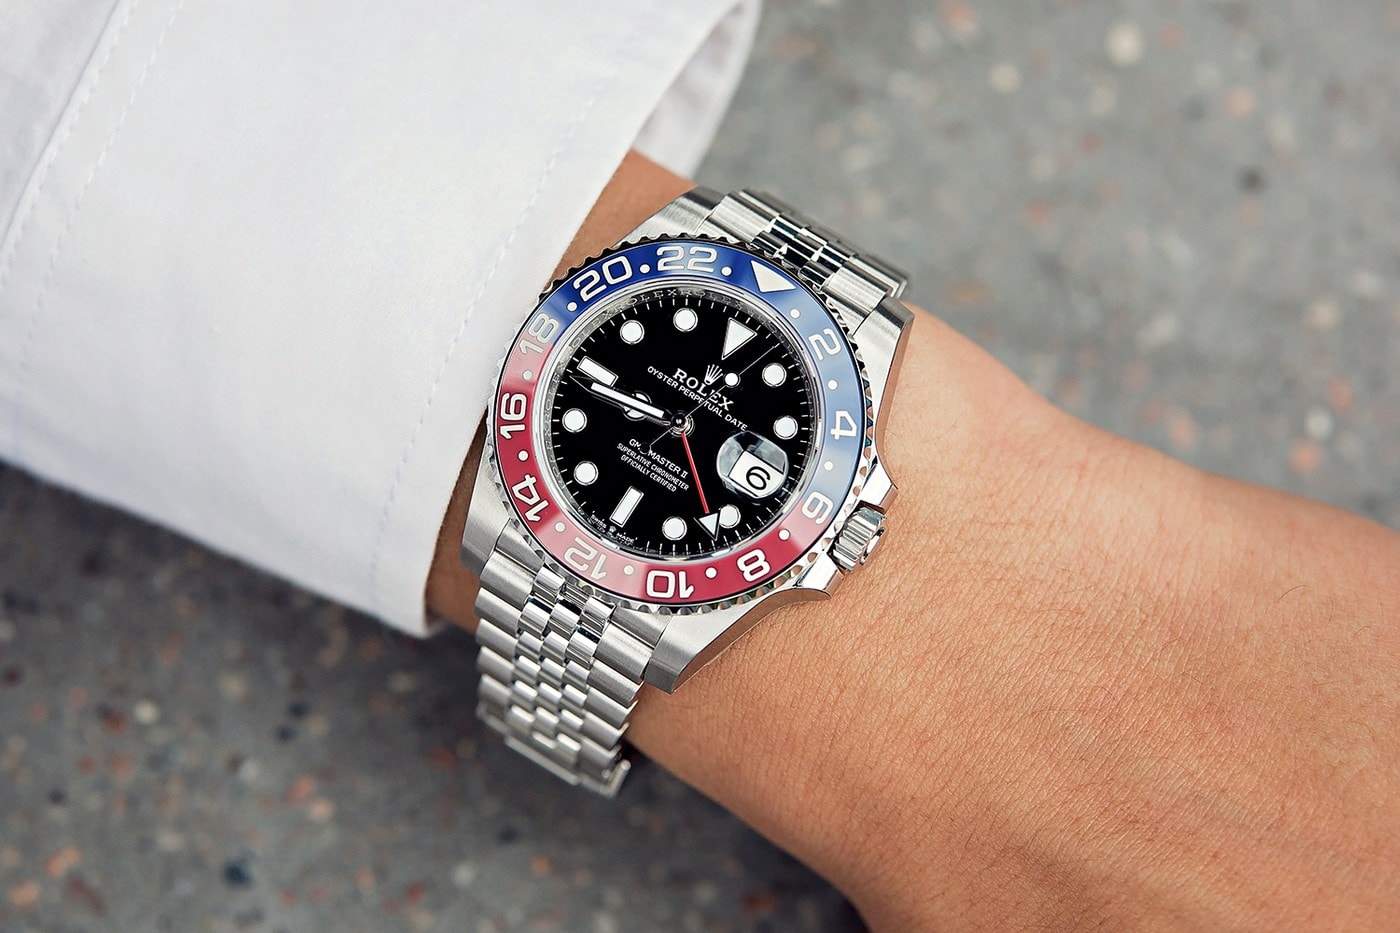 揭示 2019 年 Rolex 最具人氣之腕錶